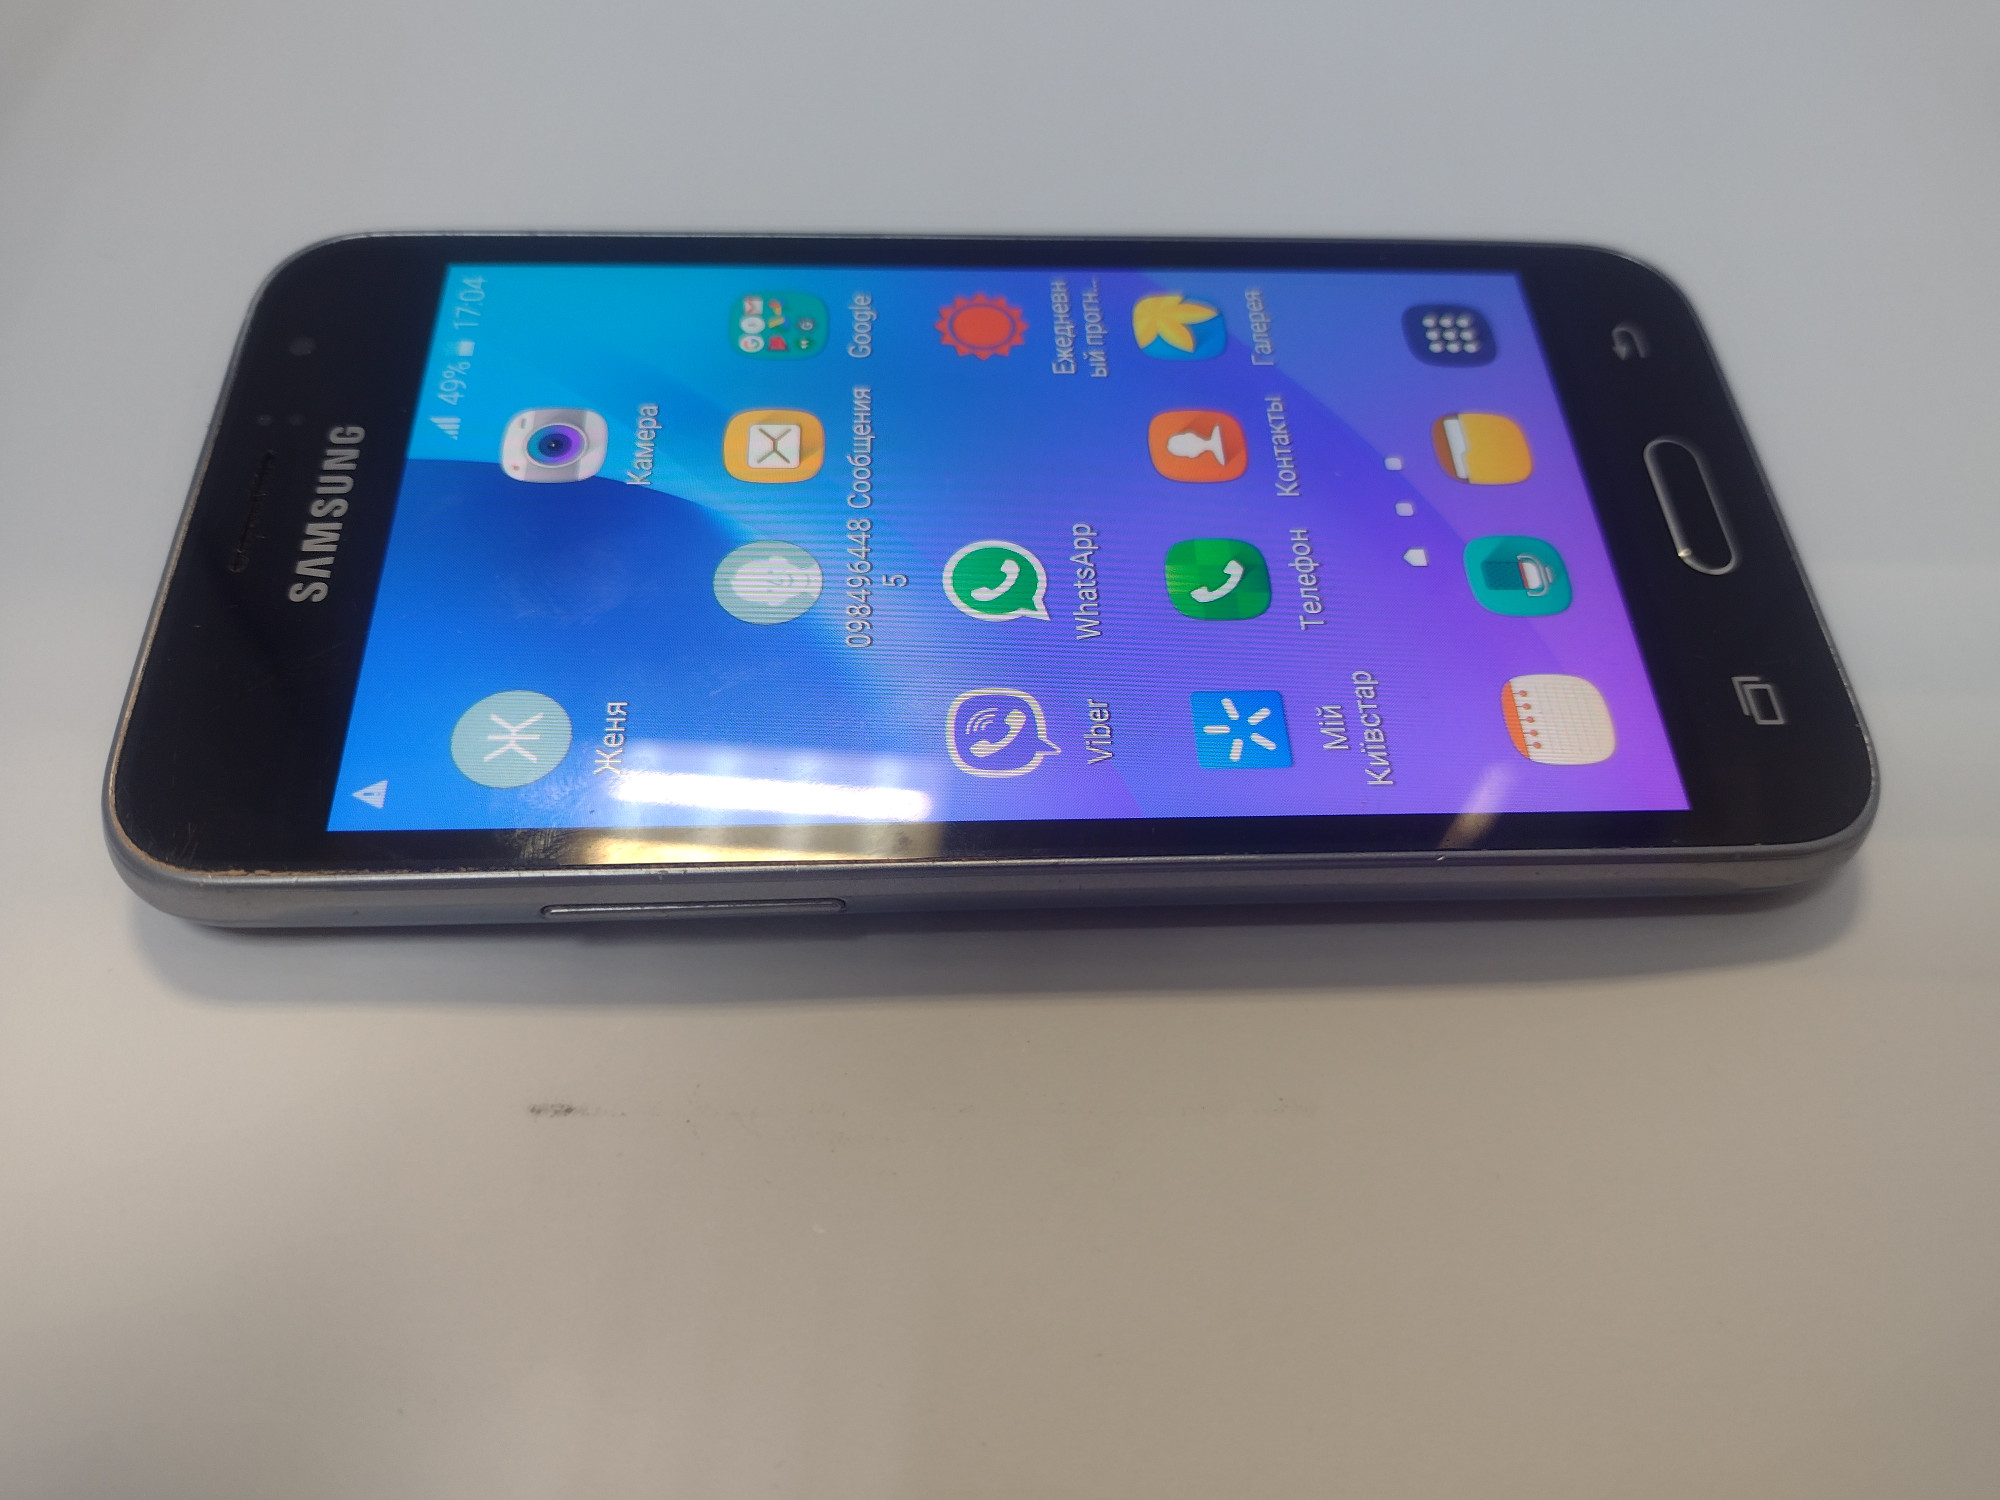 Samsung Galaxy J1 (SM-J120F) 2016 1/8Gb 3